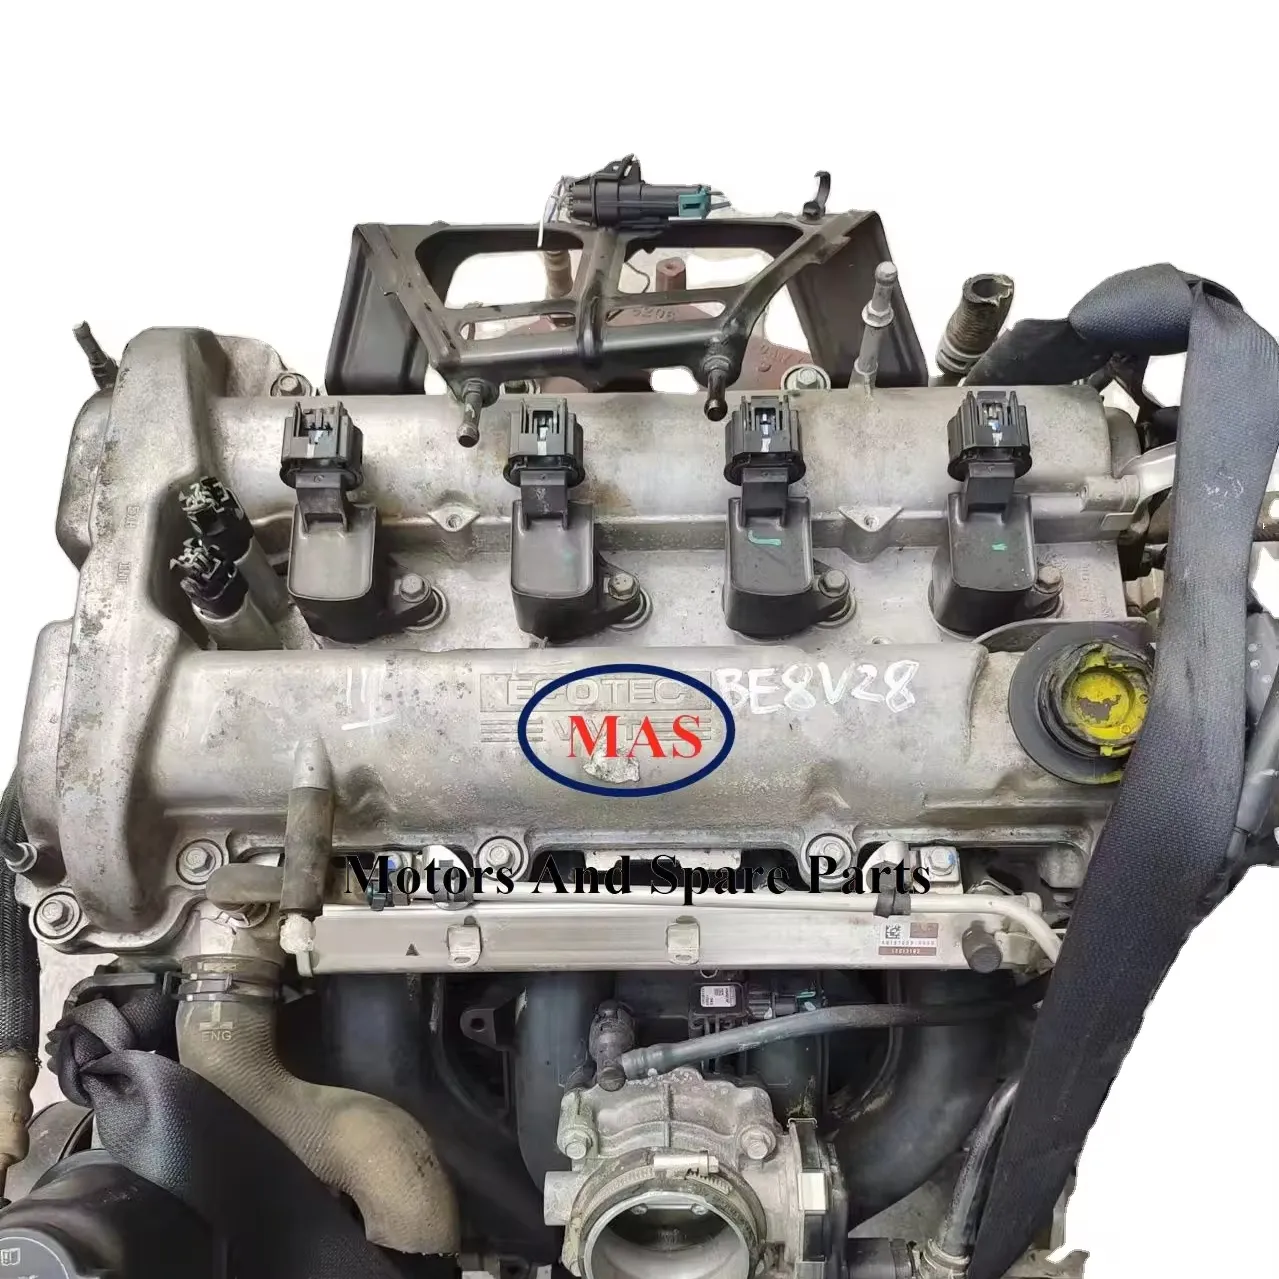 أنظمة محركات للدراجات النارية 2.0L 2.4L LE5 LTD LE9 لمحركات شيفروليه بويك كابتيفا بونتياك